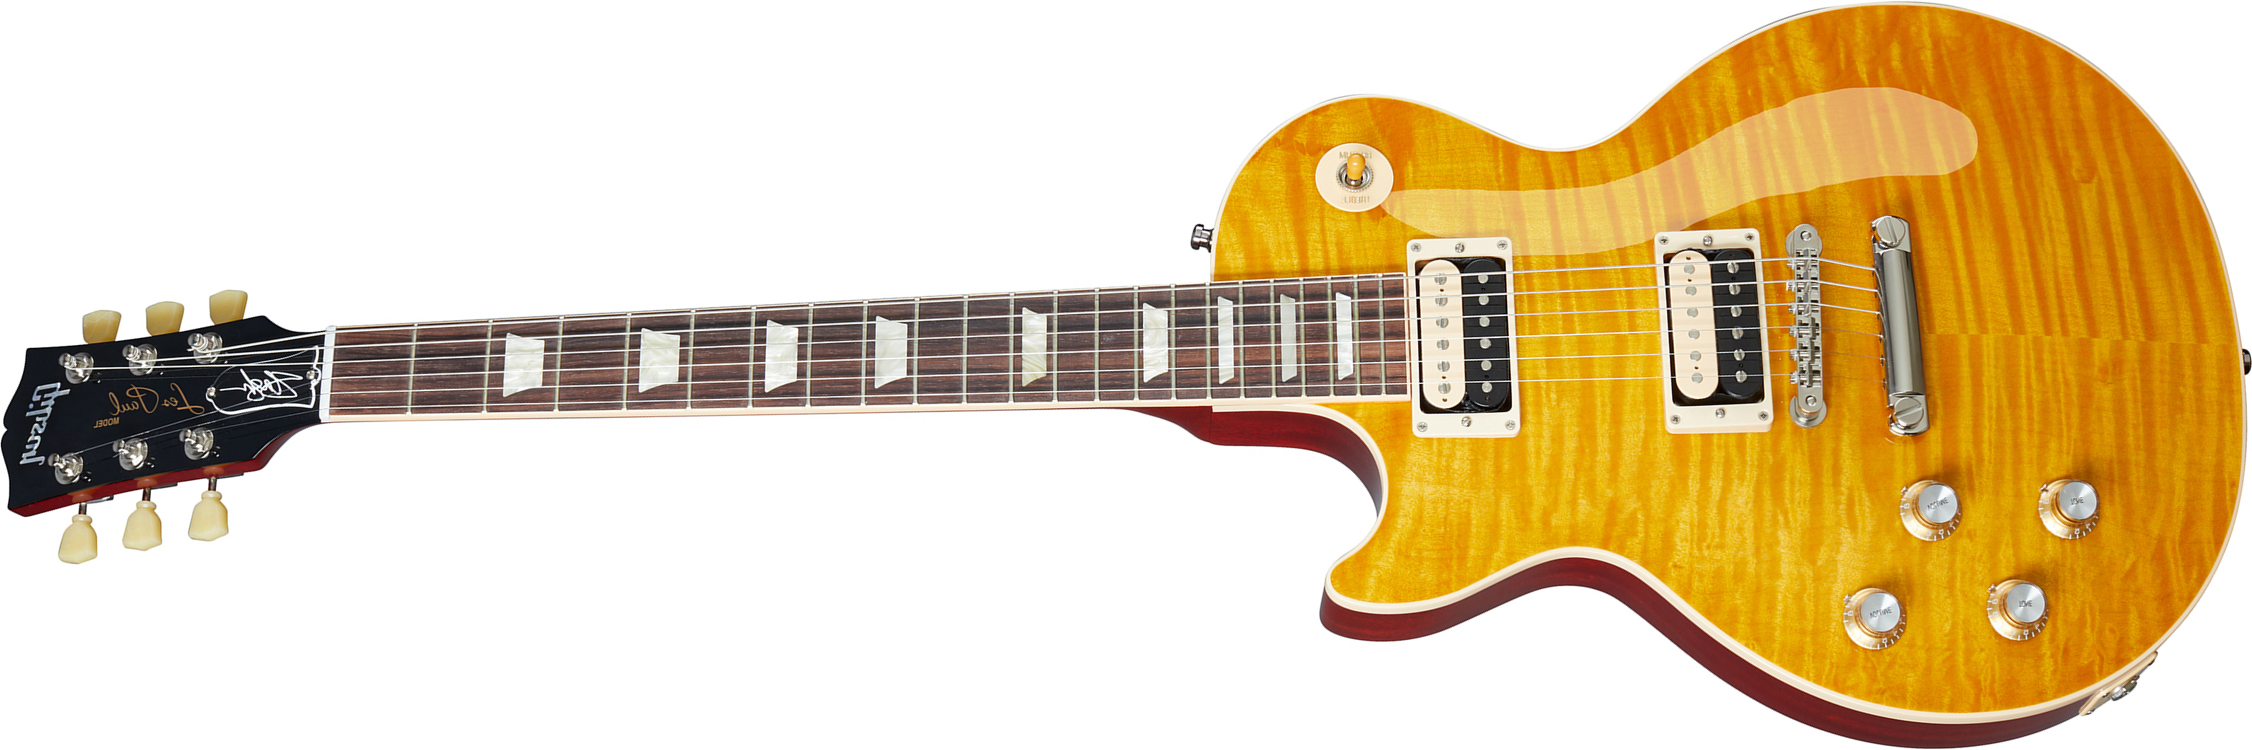 Gibson Slash Les Paul Standard 50's Lh Original 2020 Signature Gaucher 2h Ht Rw - Appetite Amber - Guitare Électrique Gaucher - Main picture